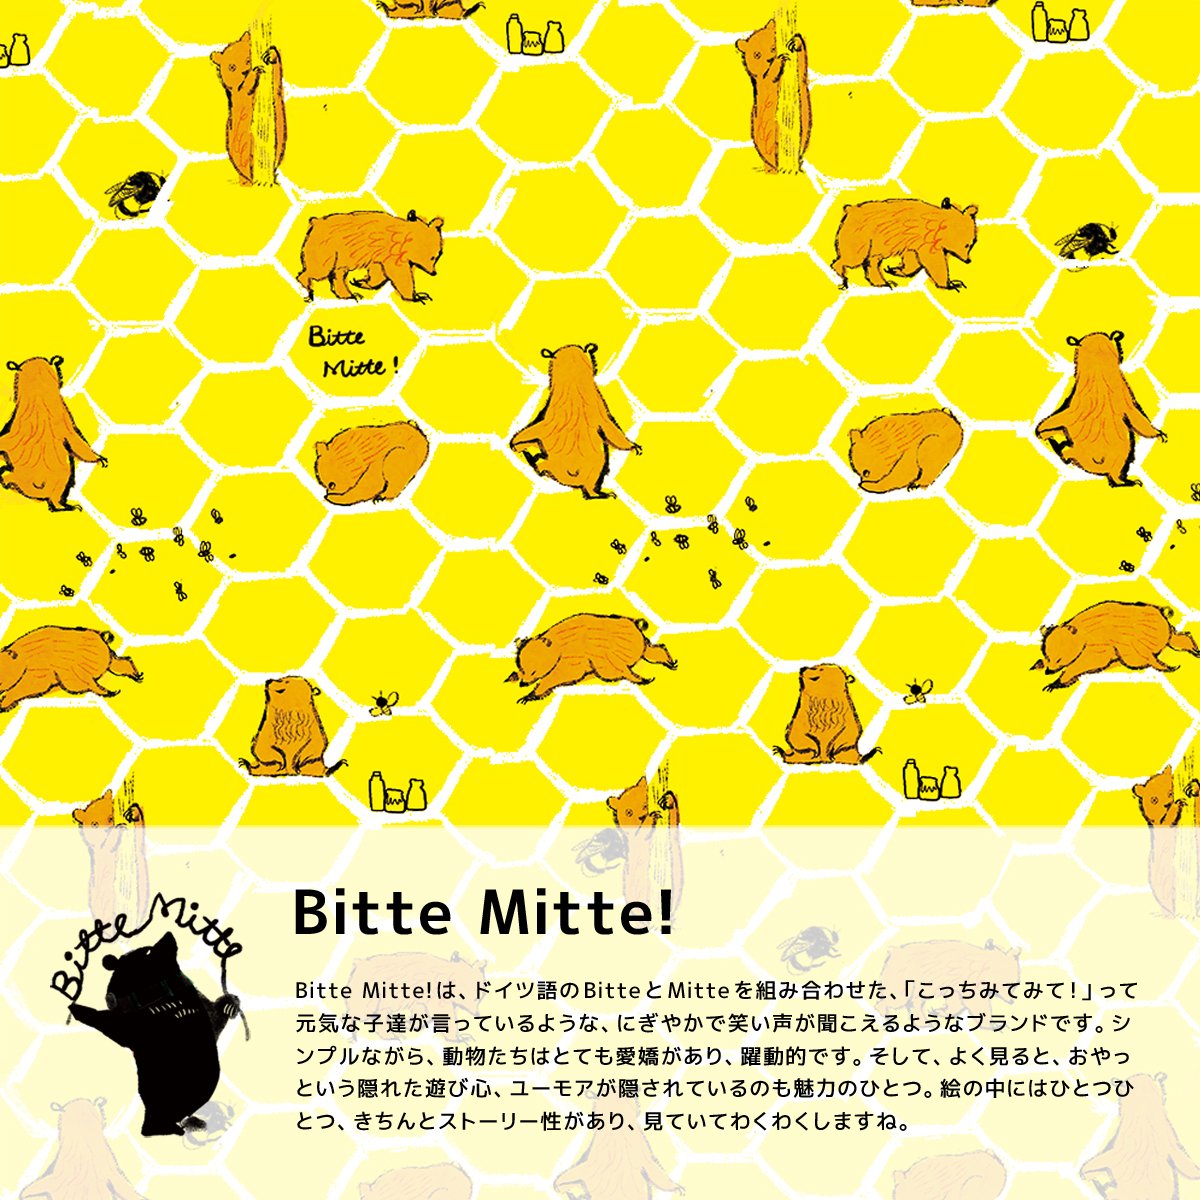 Bitte Mitte!は、ドイツ語のBitteとMitteを組み合わせた、「こっちみてみて！」って元気な子達が言っているような、にぎやかで笑い声が聞こえるようなブランドです。